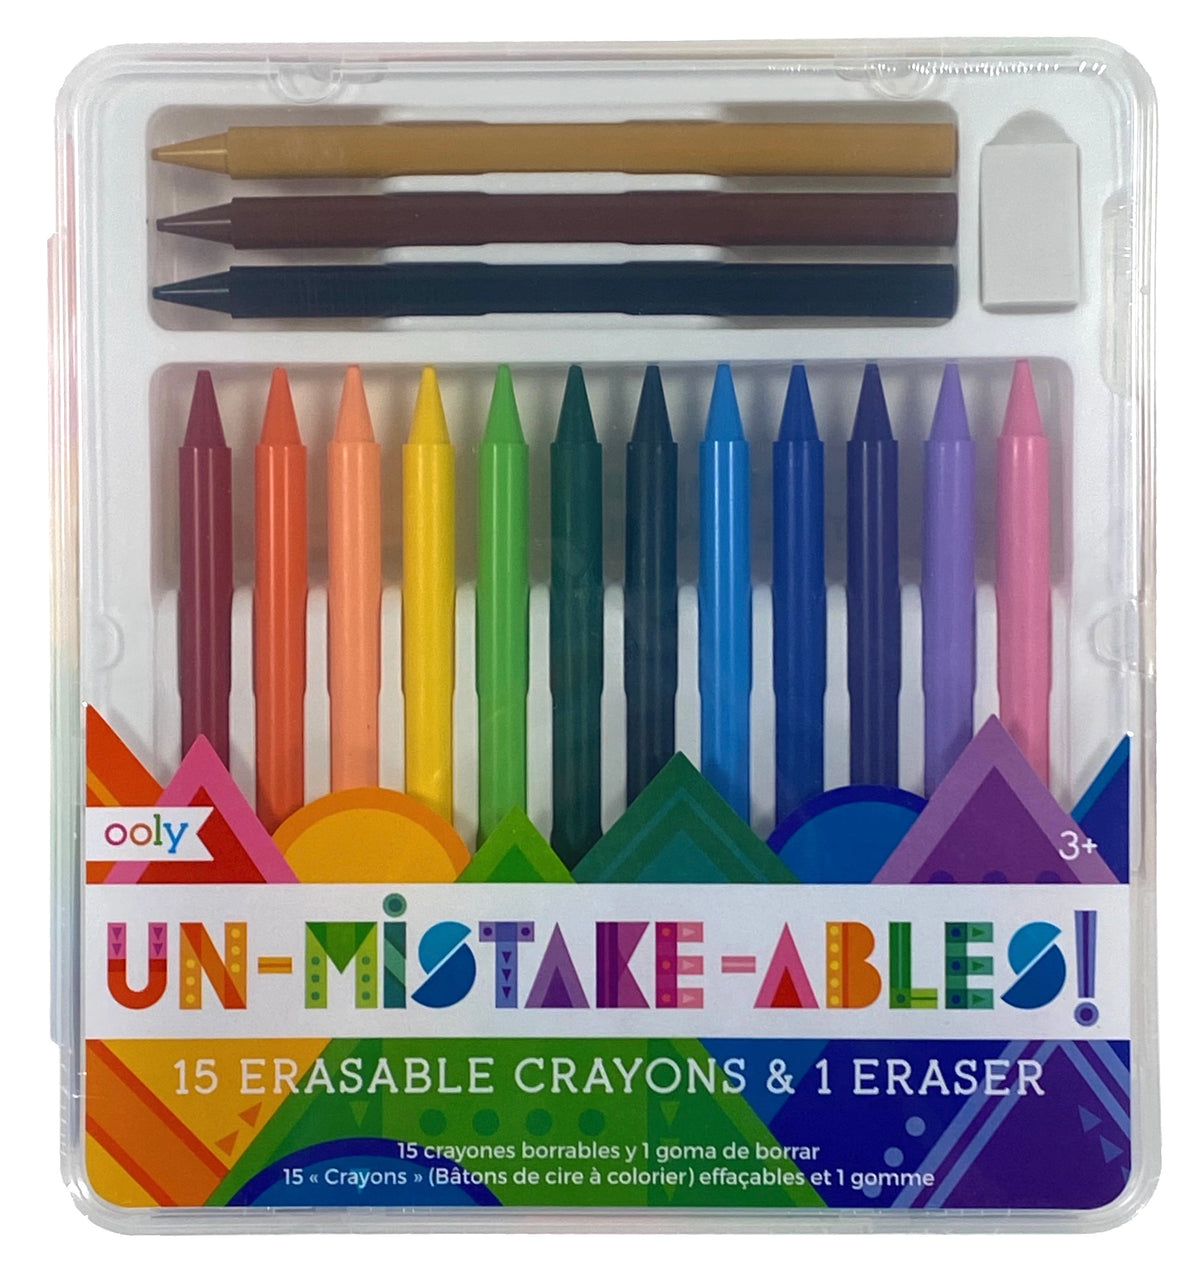 Un-Mistake-ables! Erasable Colored Pencils – Magic Box Toys NOLA